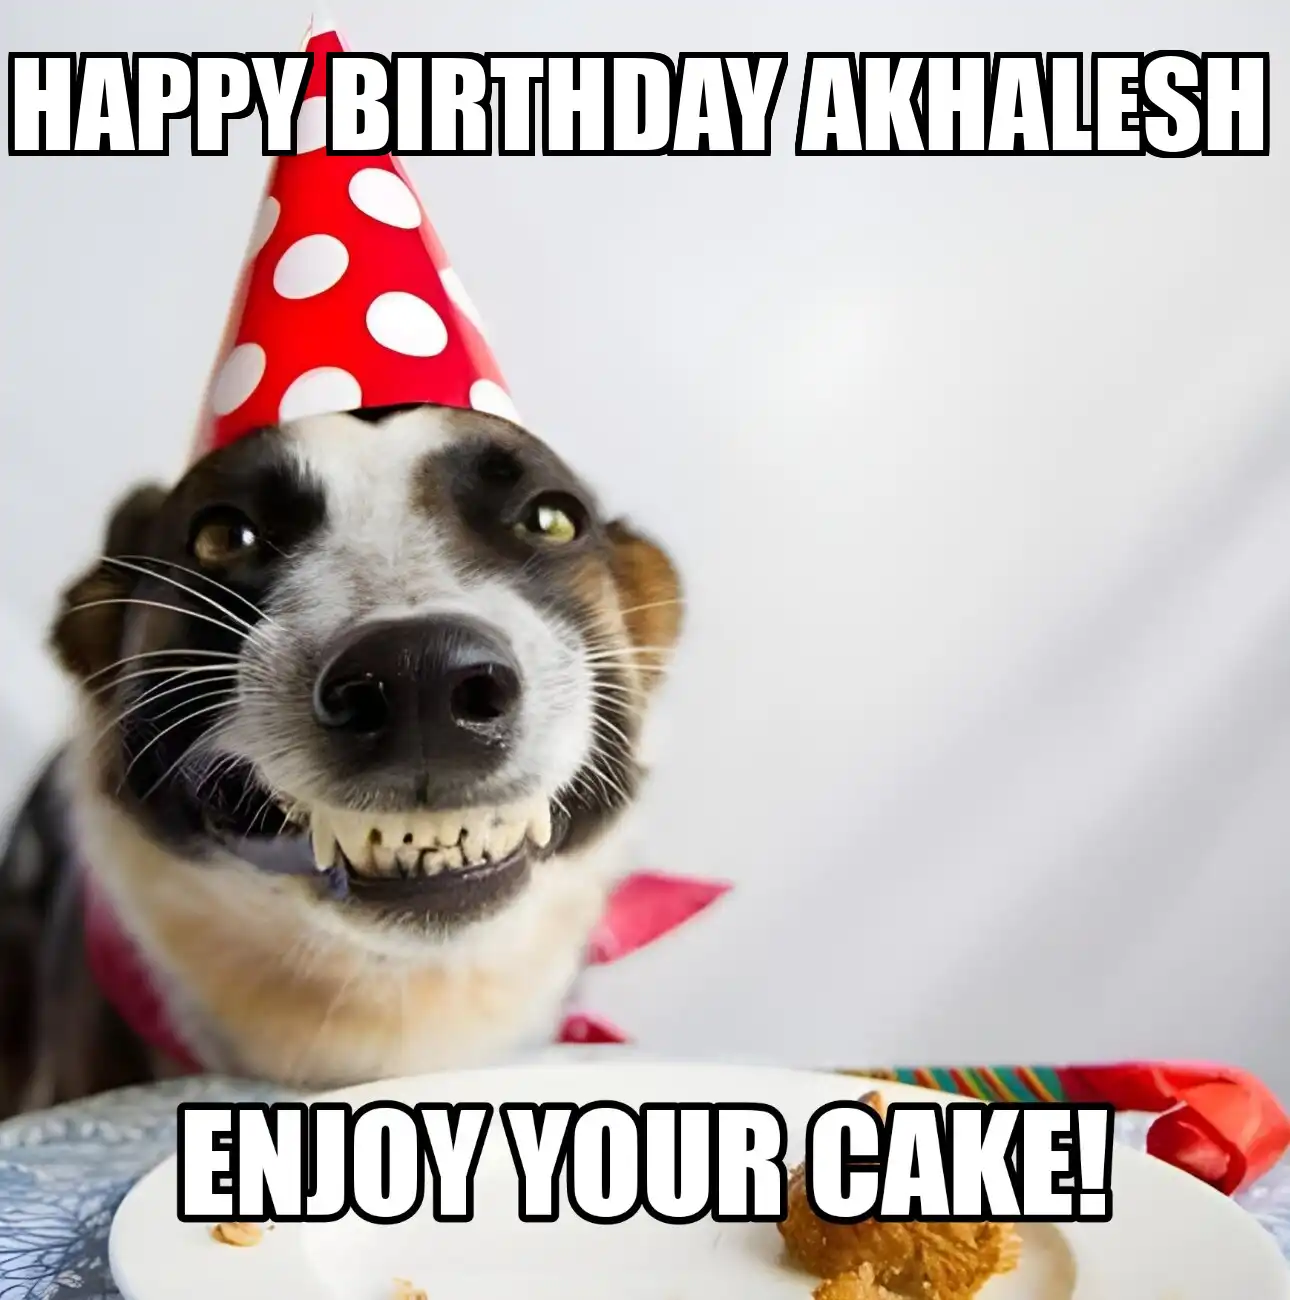 Happy Birthday Akhalesh Enjoy Your Cake Dog Meme